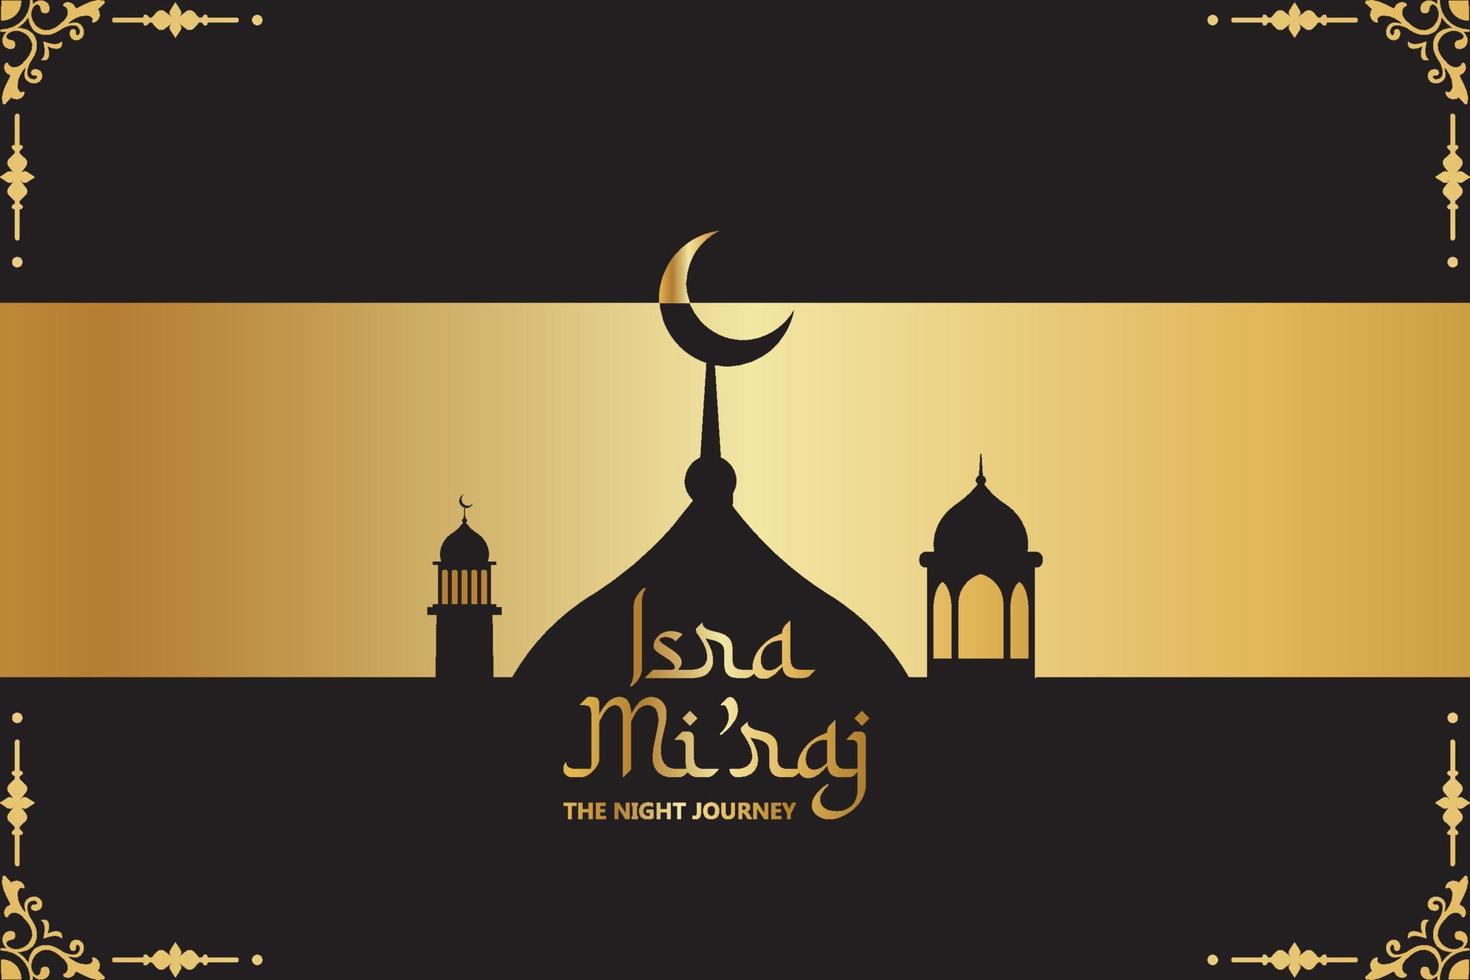 al-isra wal mi'raj bedeutet die nächtliche reise des propheten muhammad. Designvorlage für islamischen Hintergrund. Vektor-Illustration. vektor